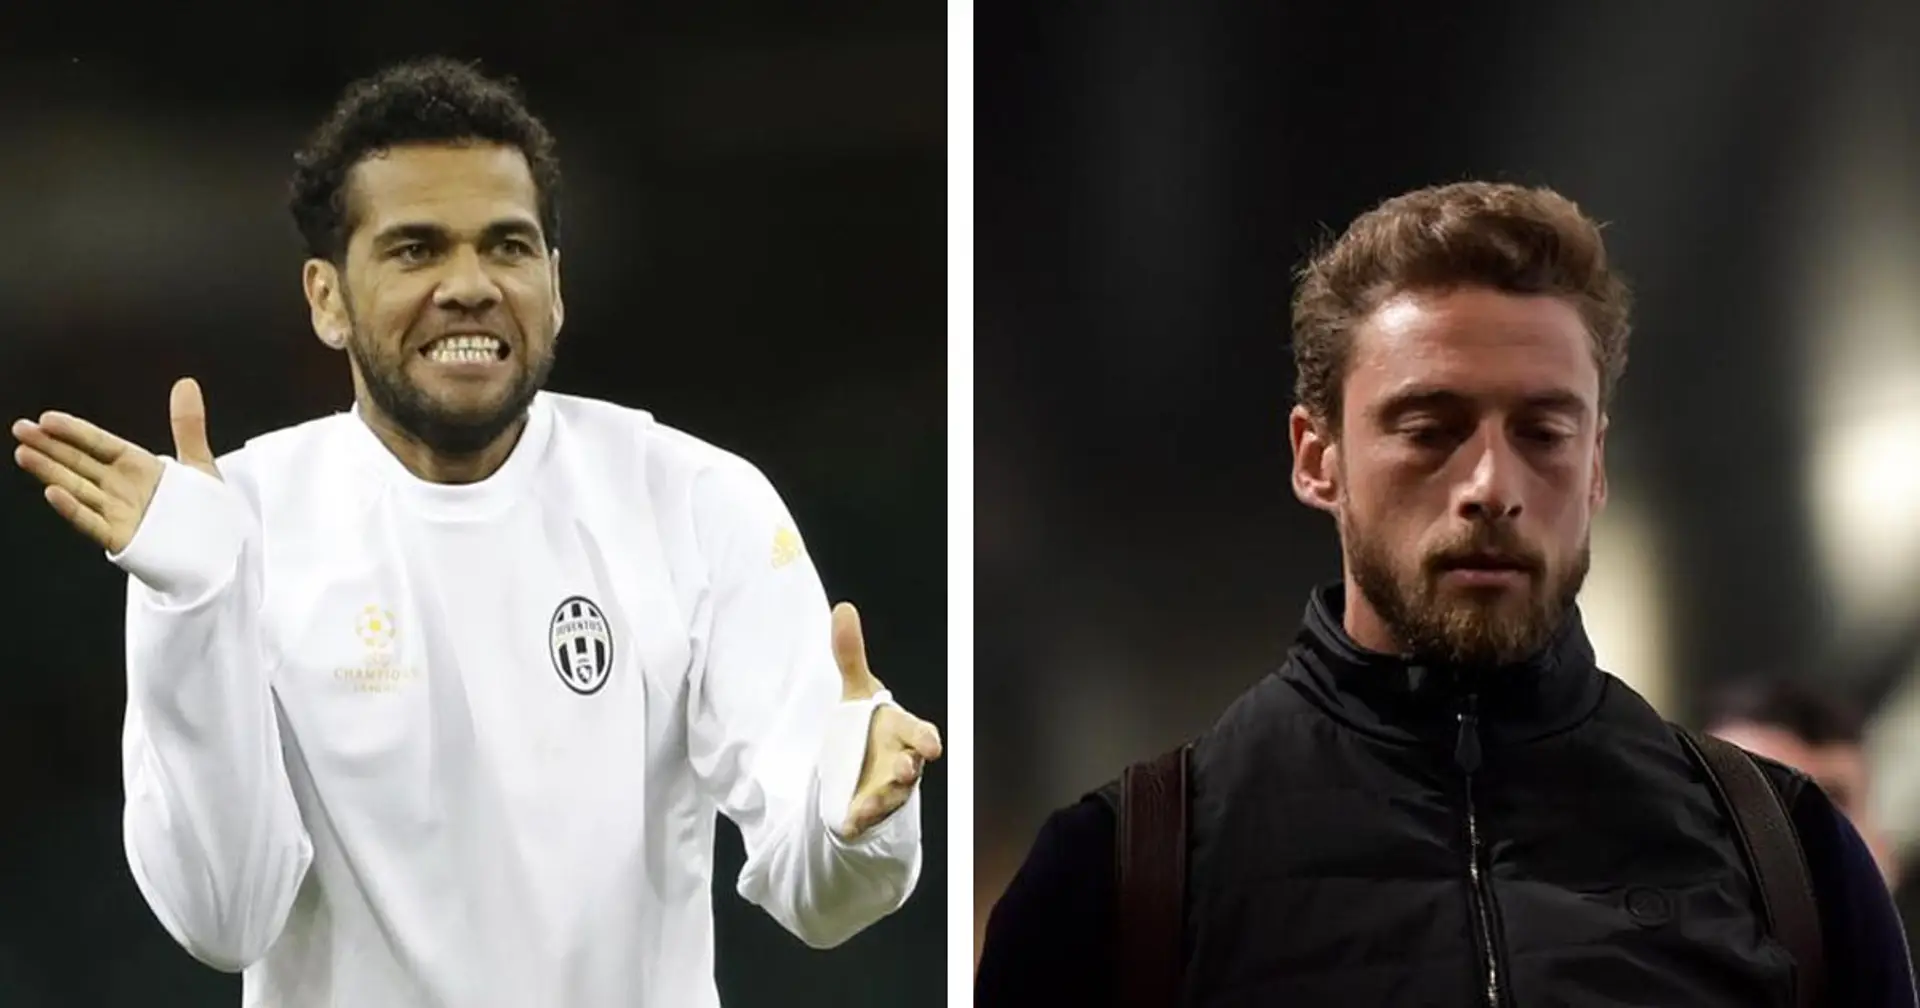 "Se provavi a impedirglielo diventava una furia": Marchisio svela un retroscena su Dani Alves